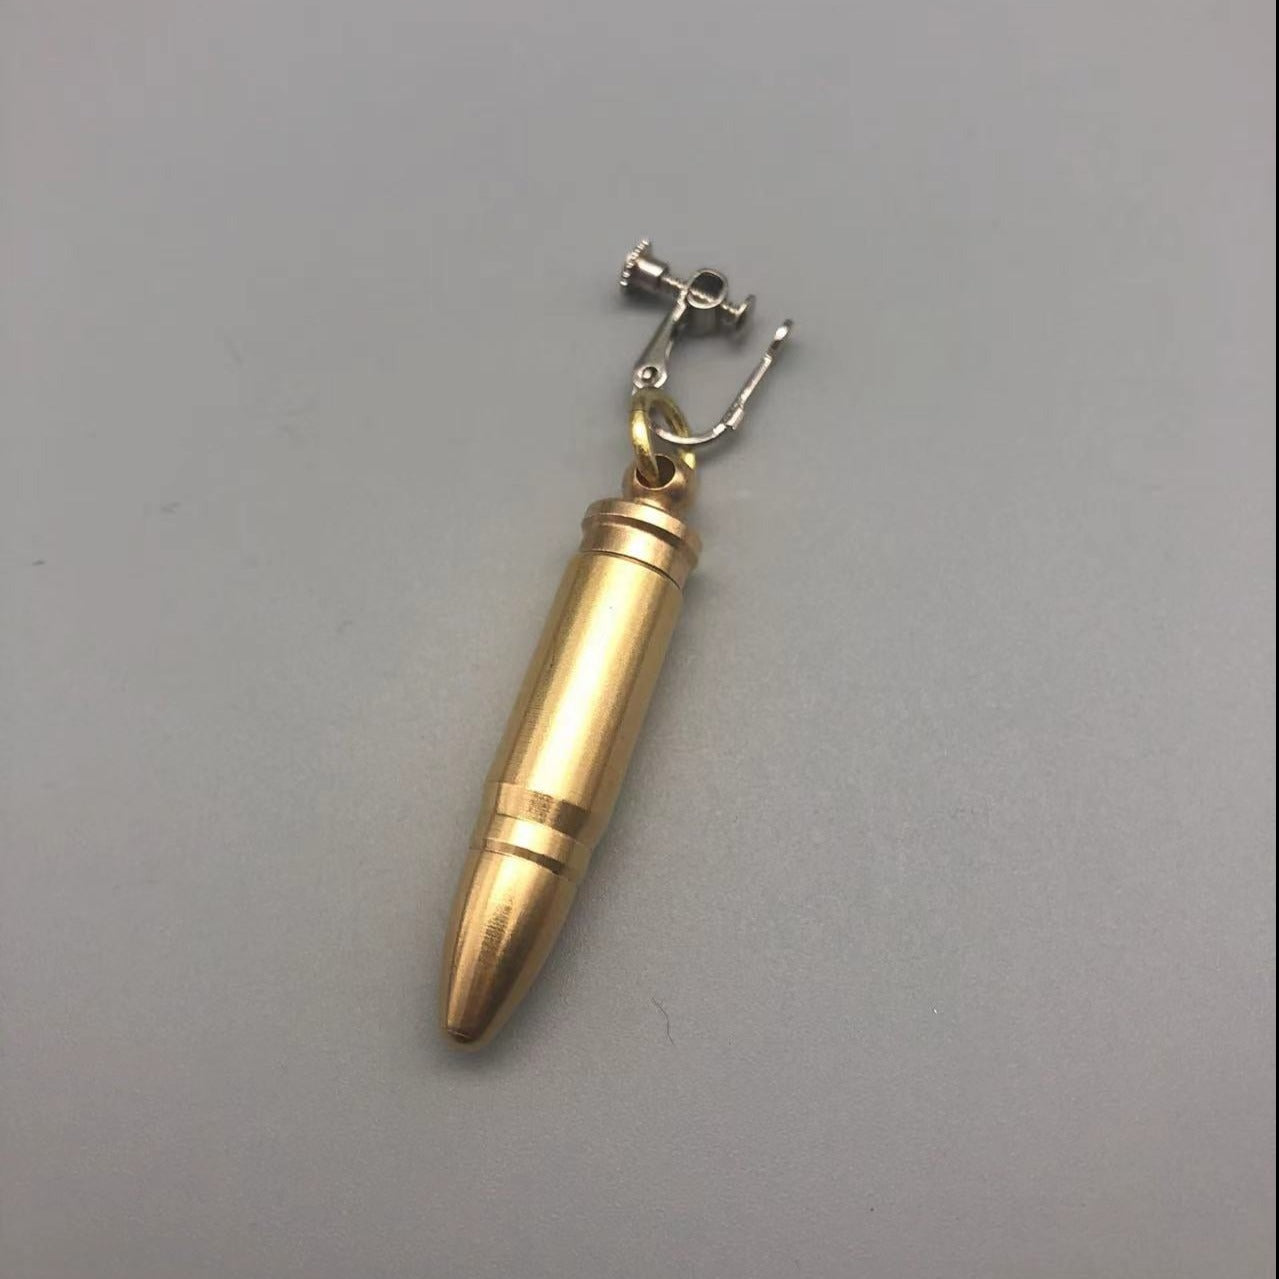 Bullet Hidden Knife Earring Key Chain Necklace Open Package Multi-function Jewelry